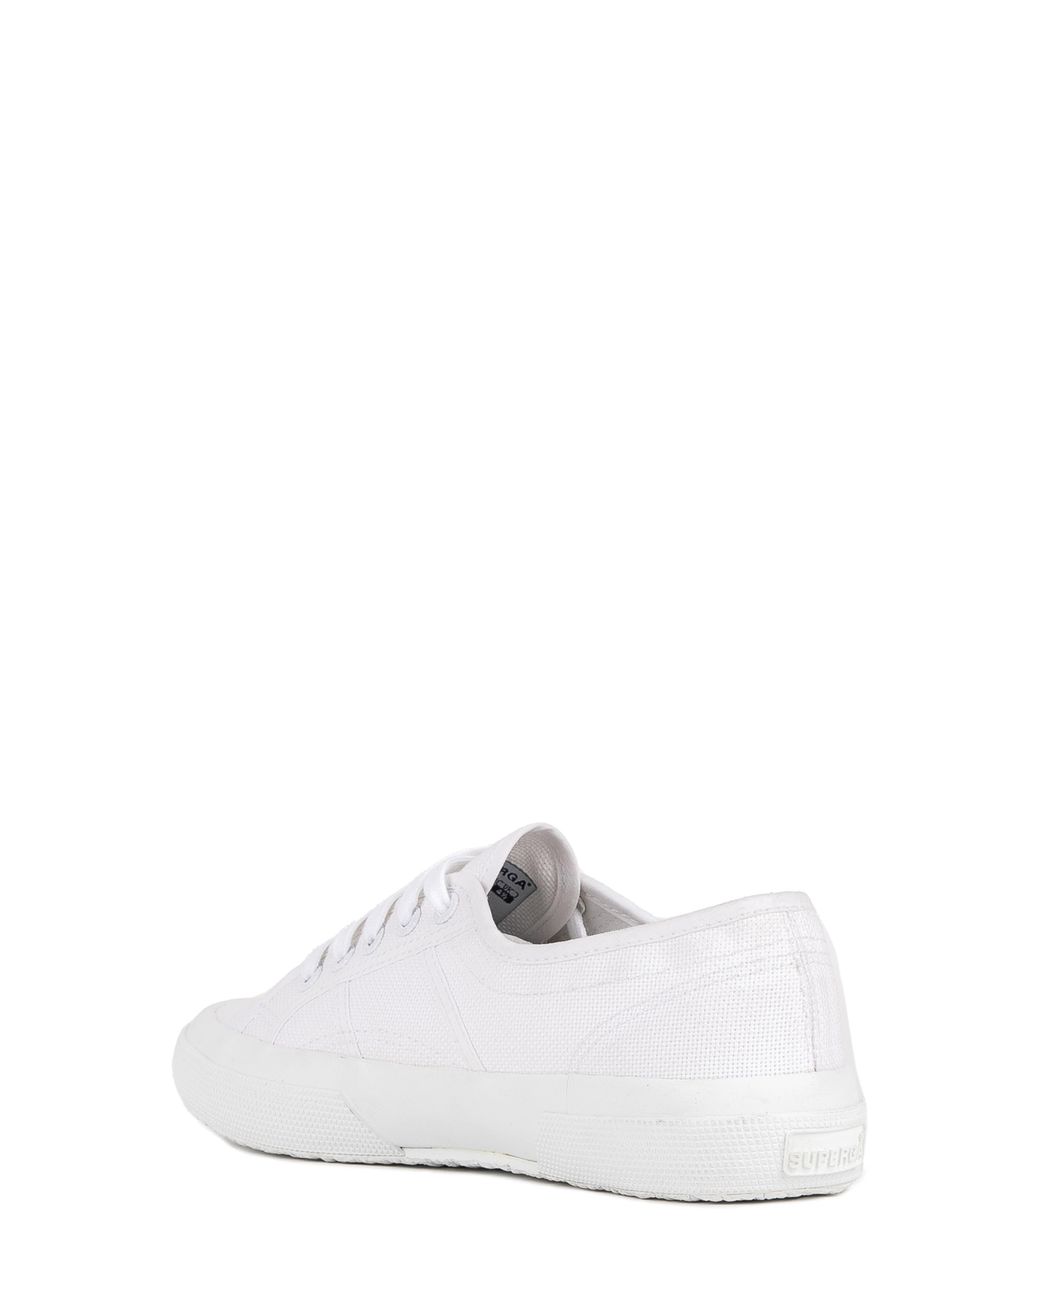 Superga 2750 Cotu Classic Sneaker in White | Lyst